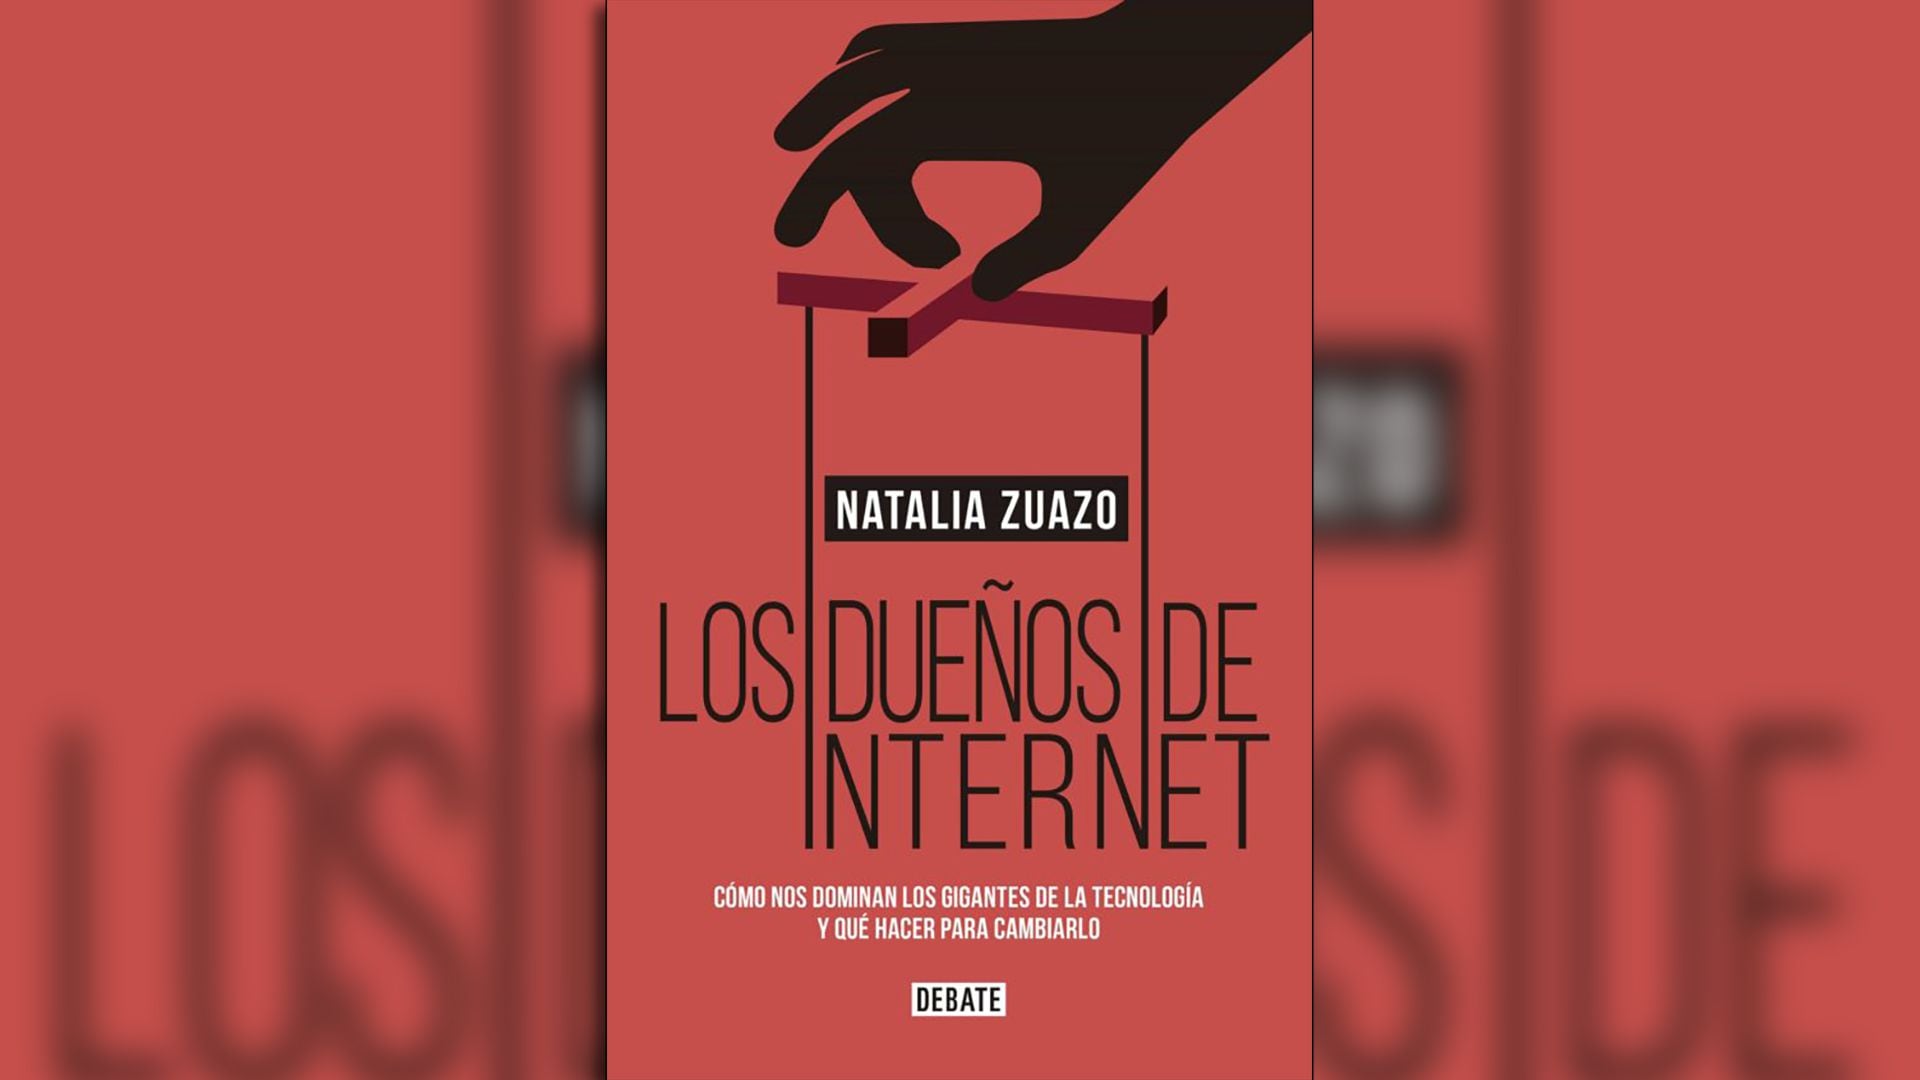 Portada del libro “Los dueños de internet” de Natalia Zuazo